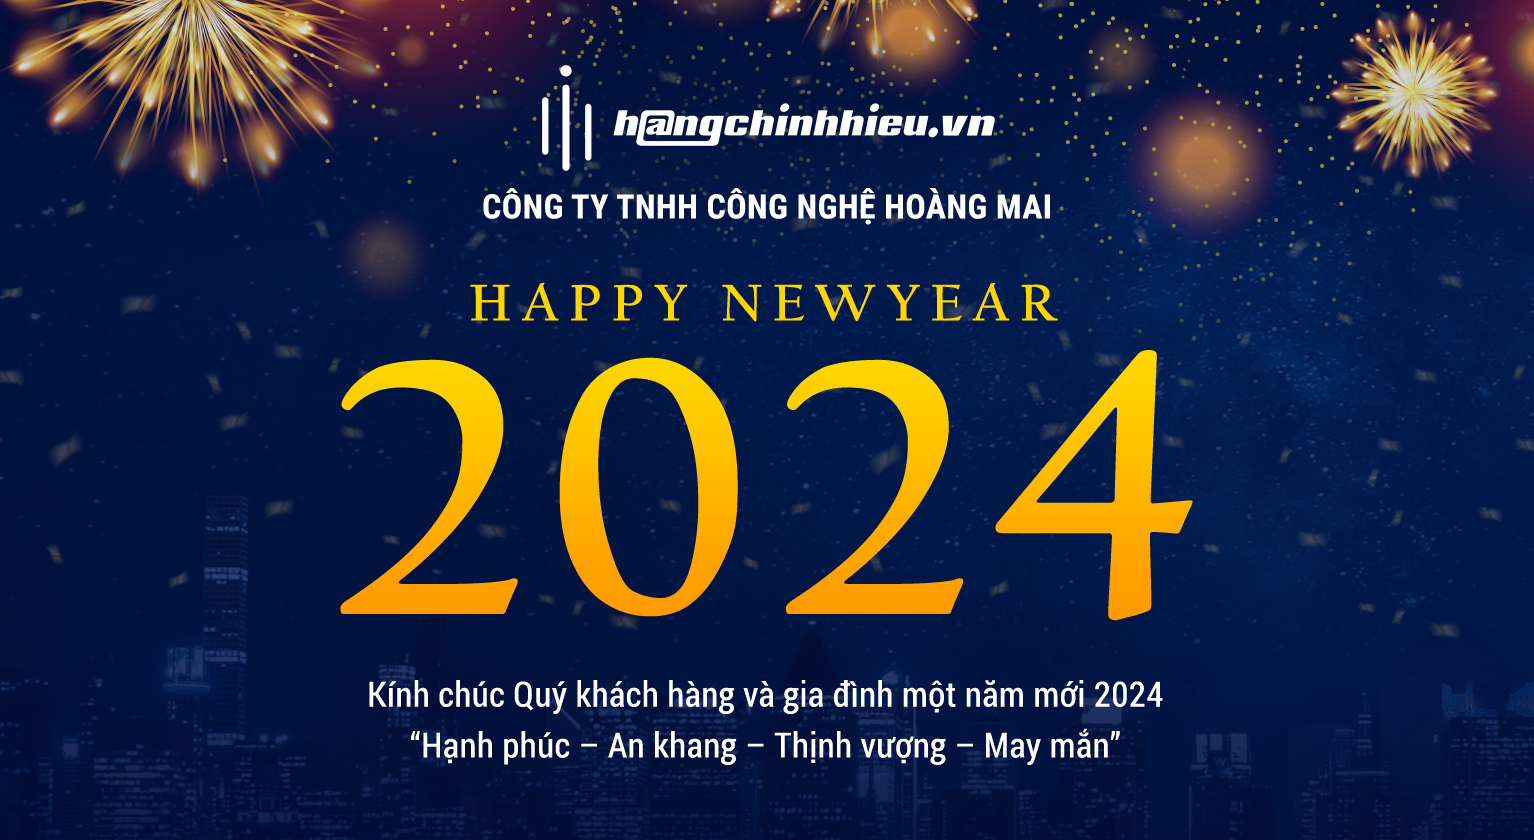 Hàng Chính Hiệu mừng năm mới 2024